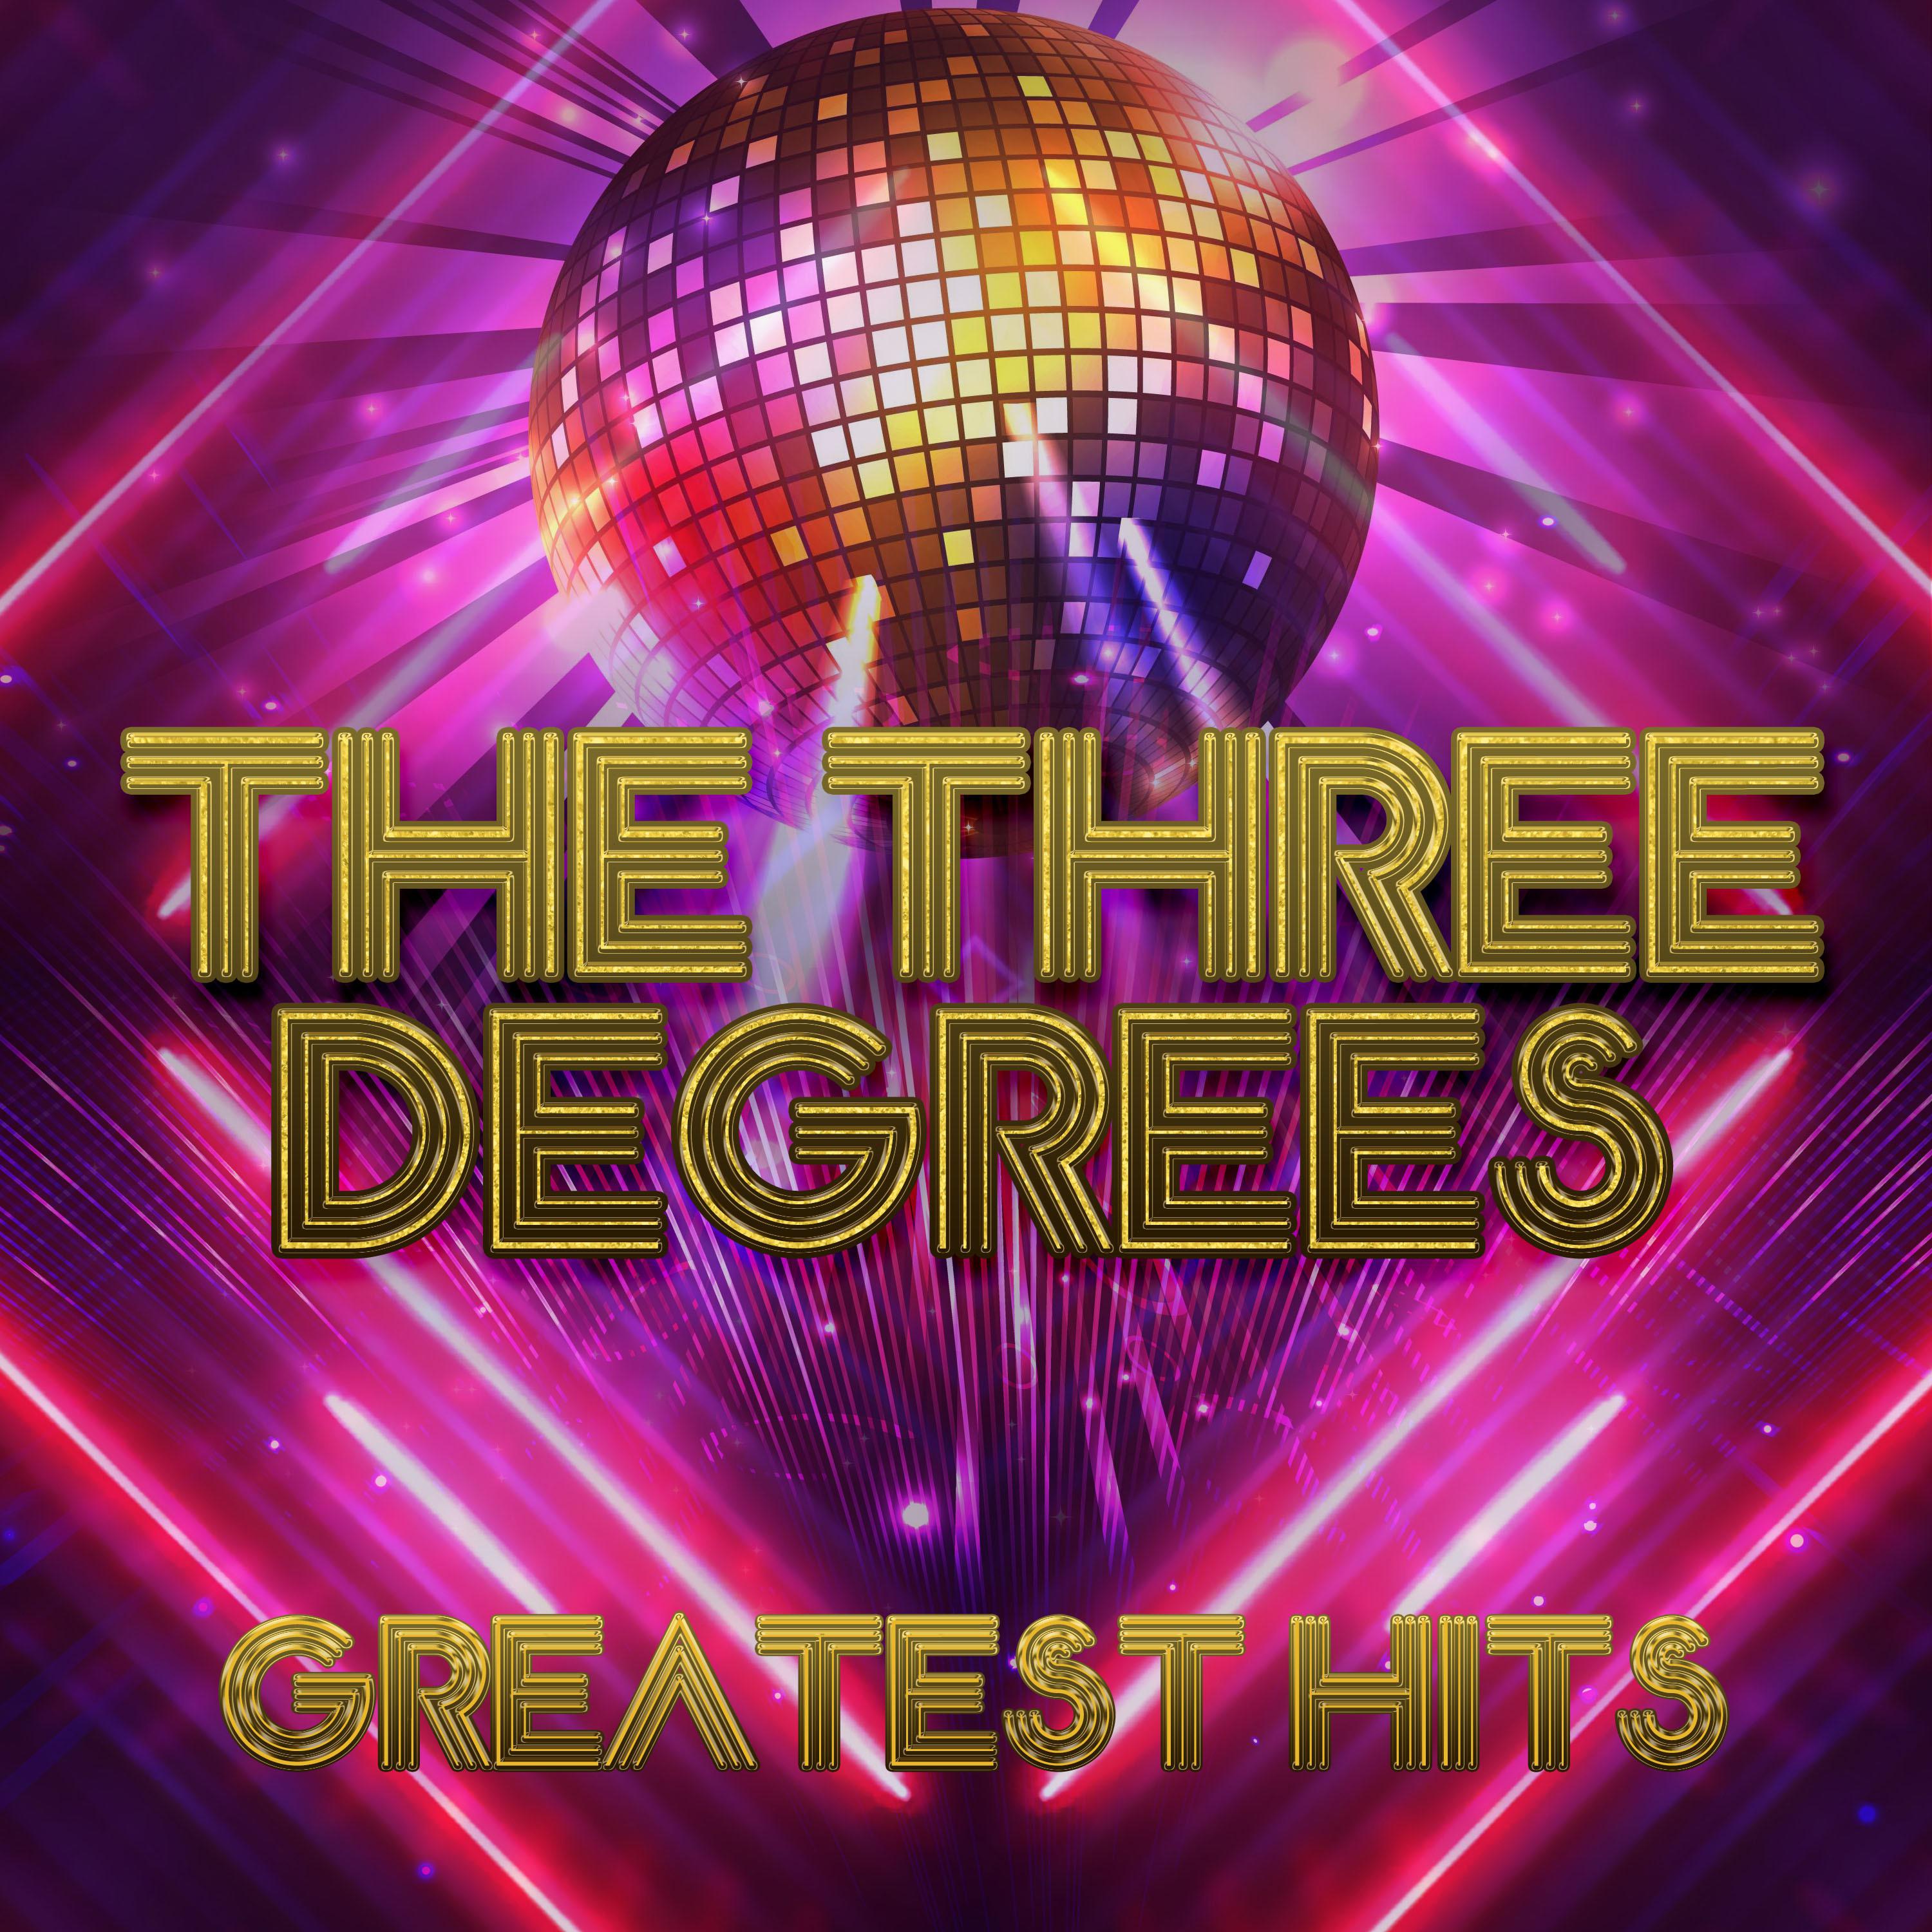 The Three Degrees - The Heaven I Need (Rerecorded)